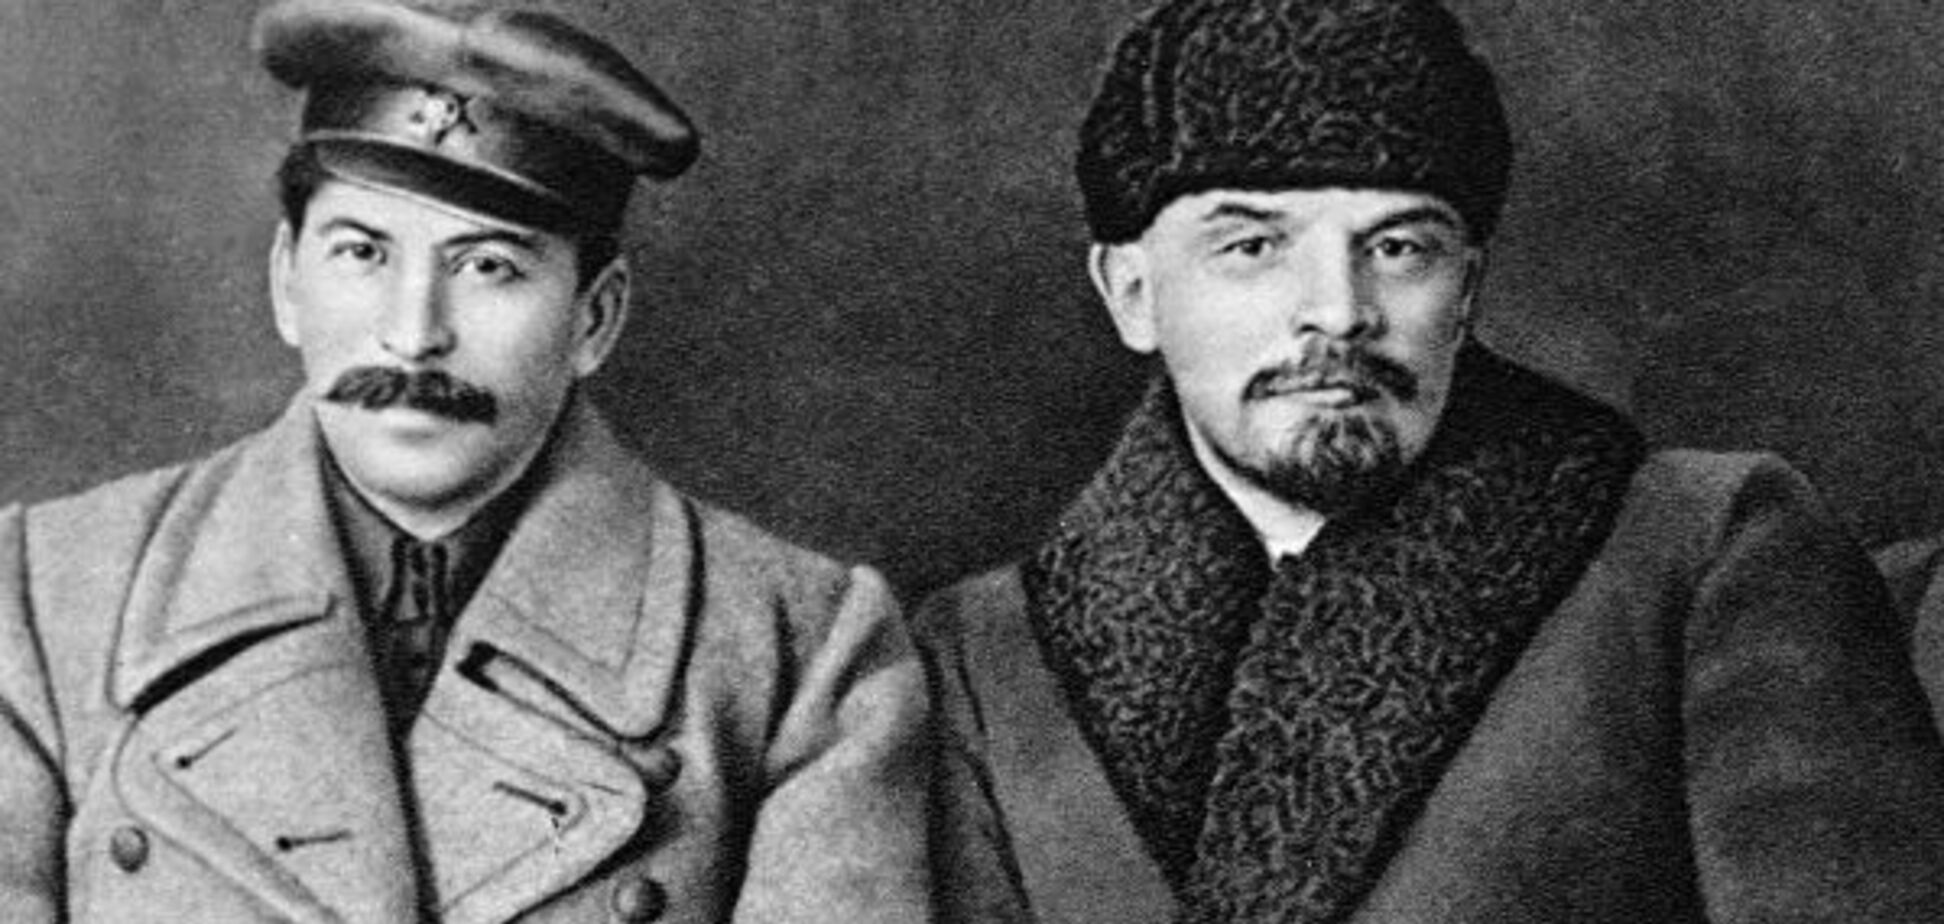 Сталину прилично намяли бока прямо за Мавзолеем